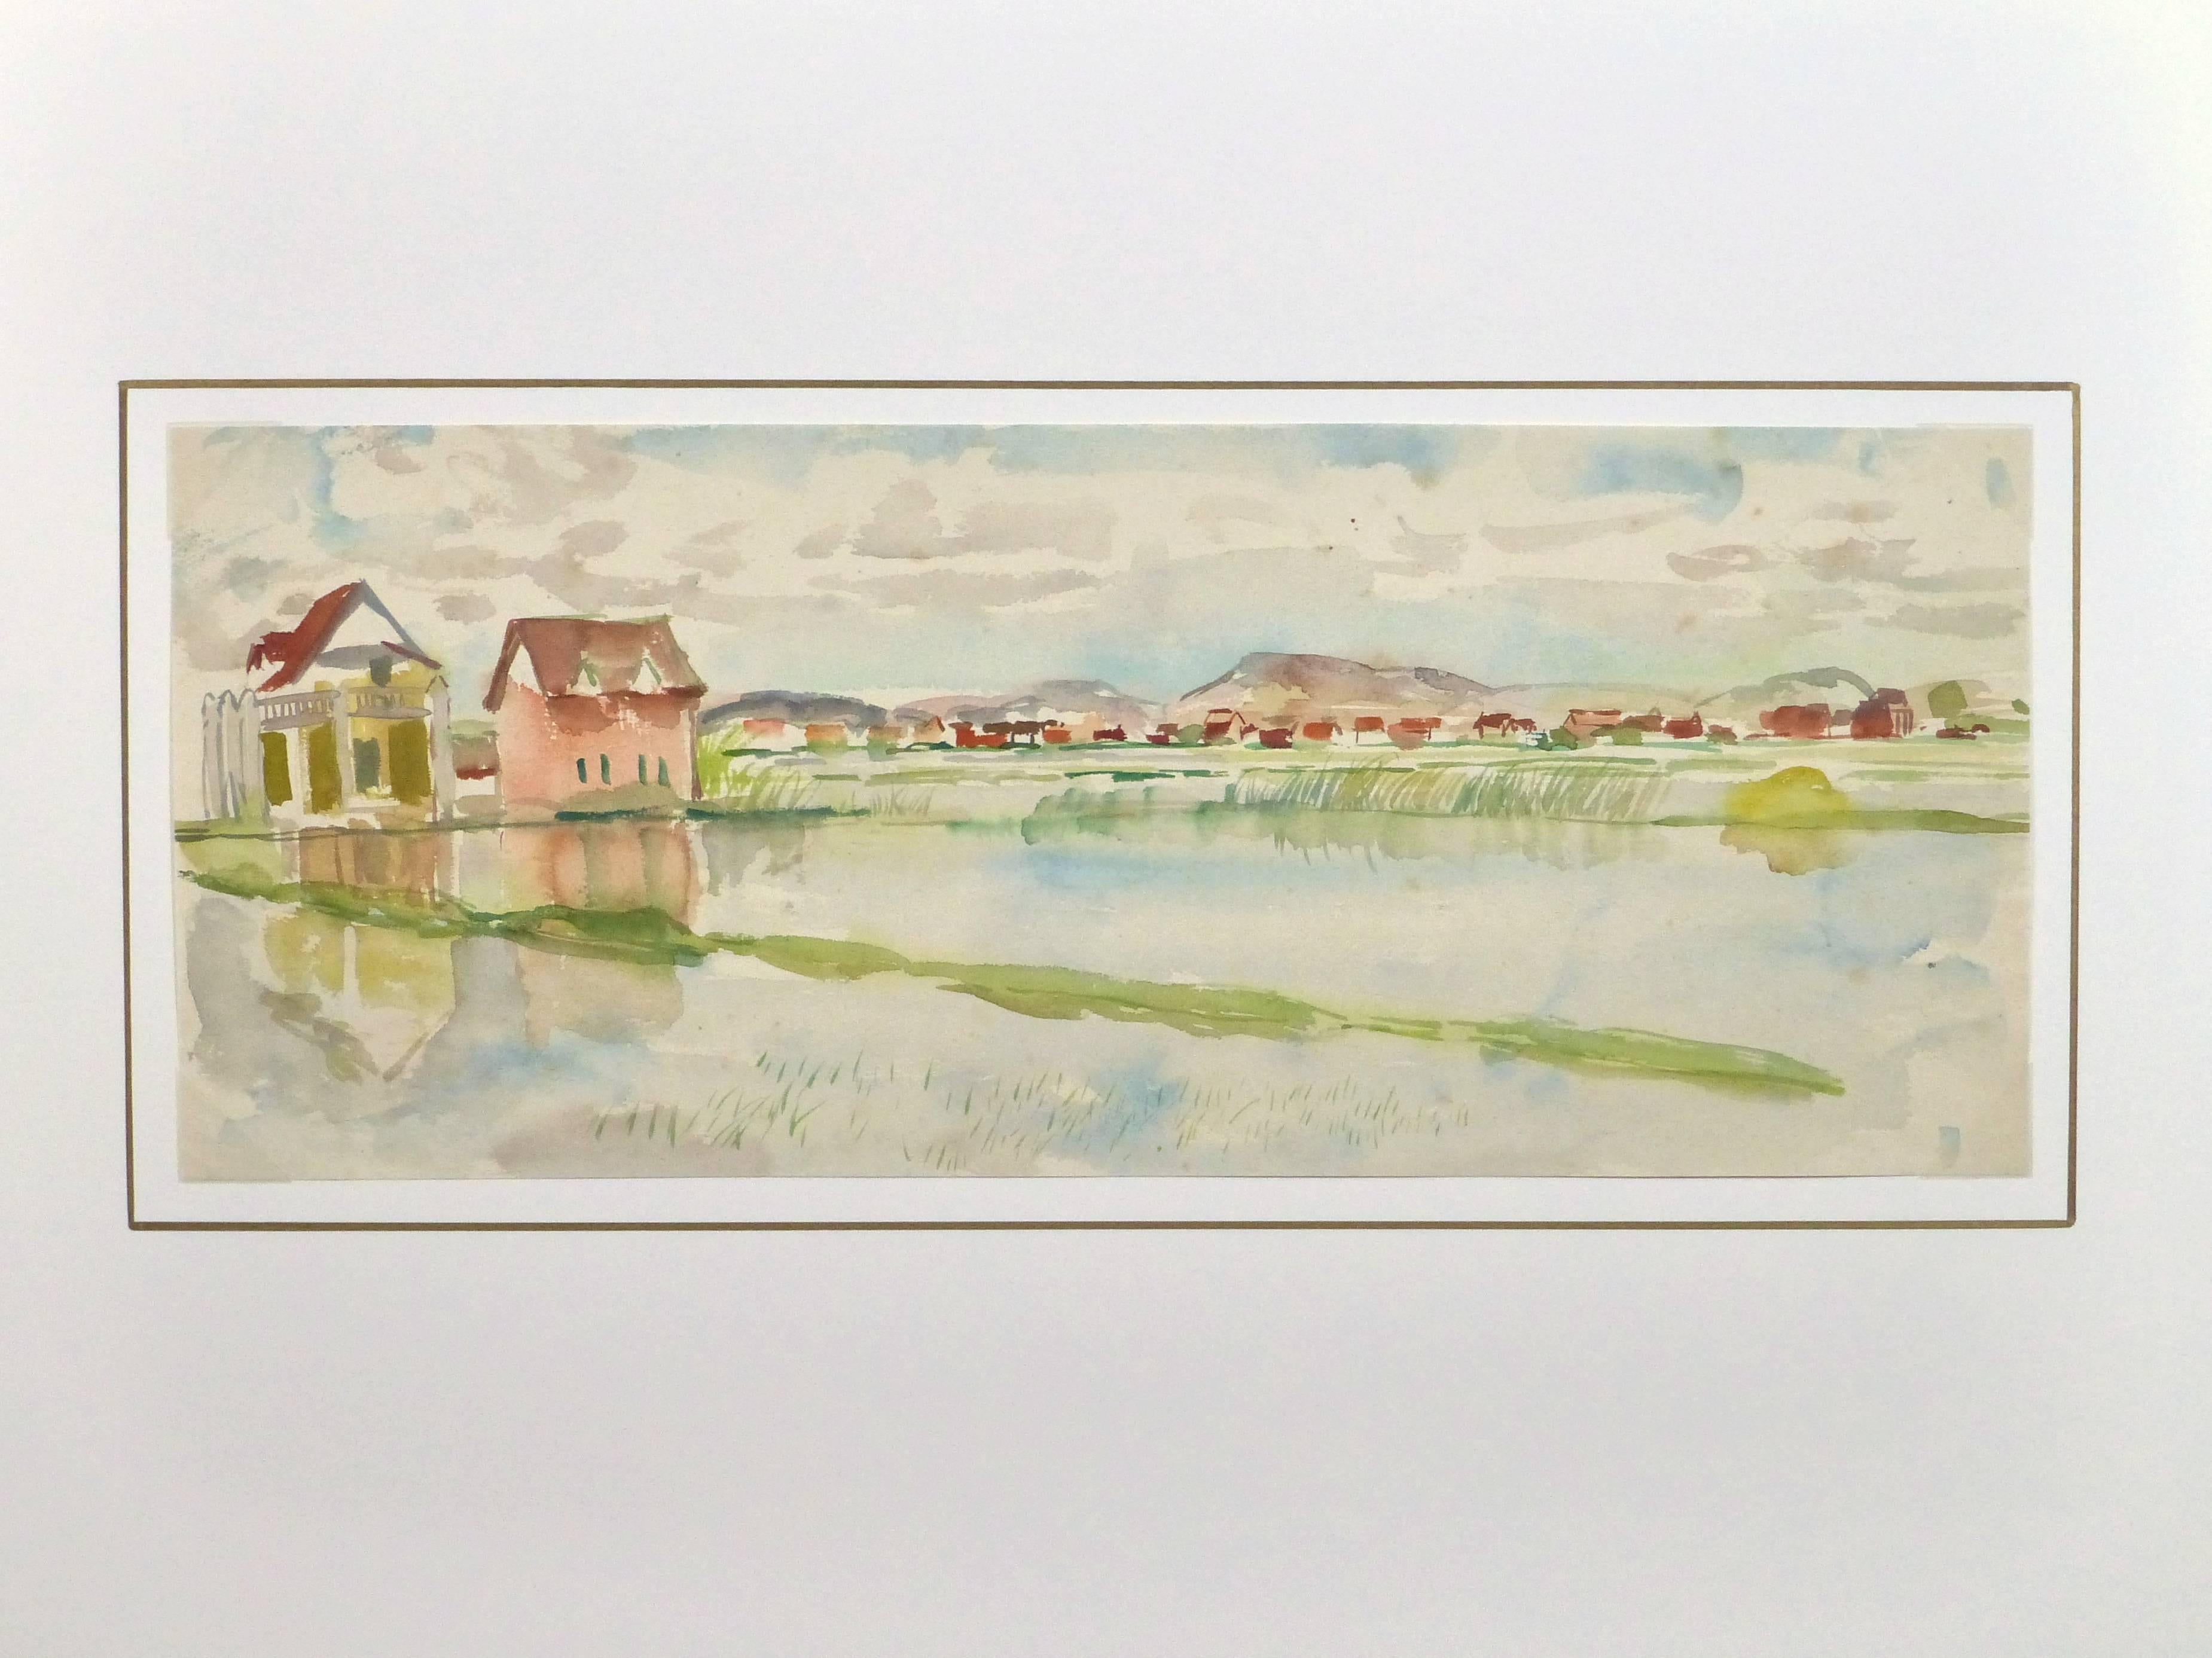 Tranquille aquarelle d'une rizière entourée d'un petit village agricole par l'artiste français Stéphane Magnard, vers 1950.

Œuvre d'art originale sur papier présentée sur un tapis blanc avec une bordure dorée. Pochette plastique d'archivage et